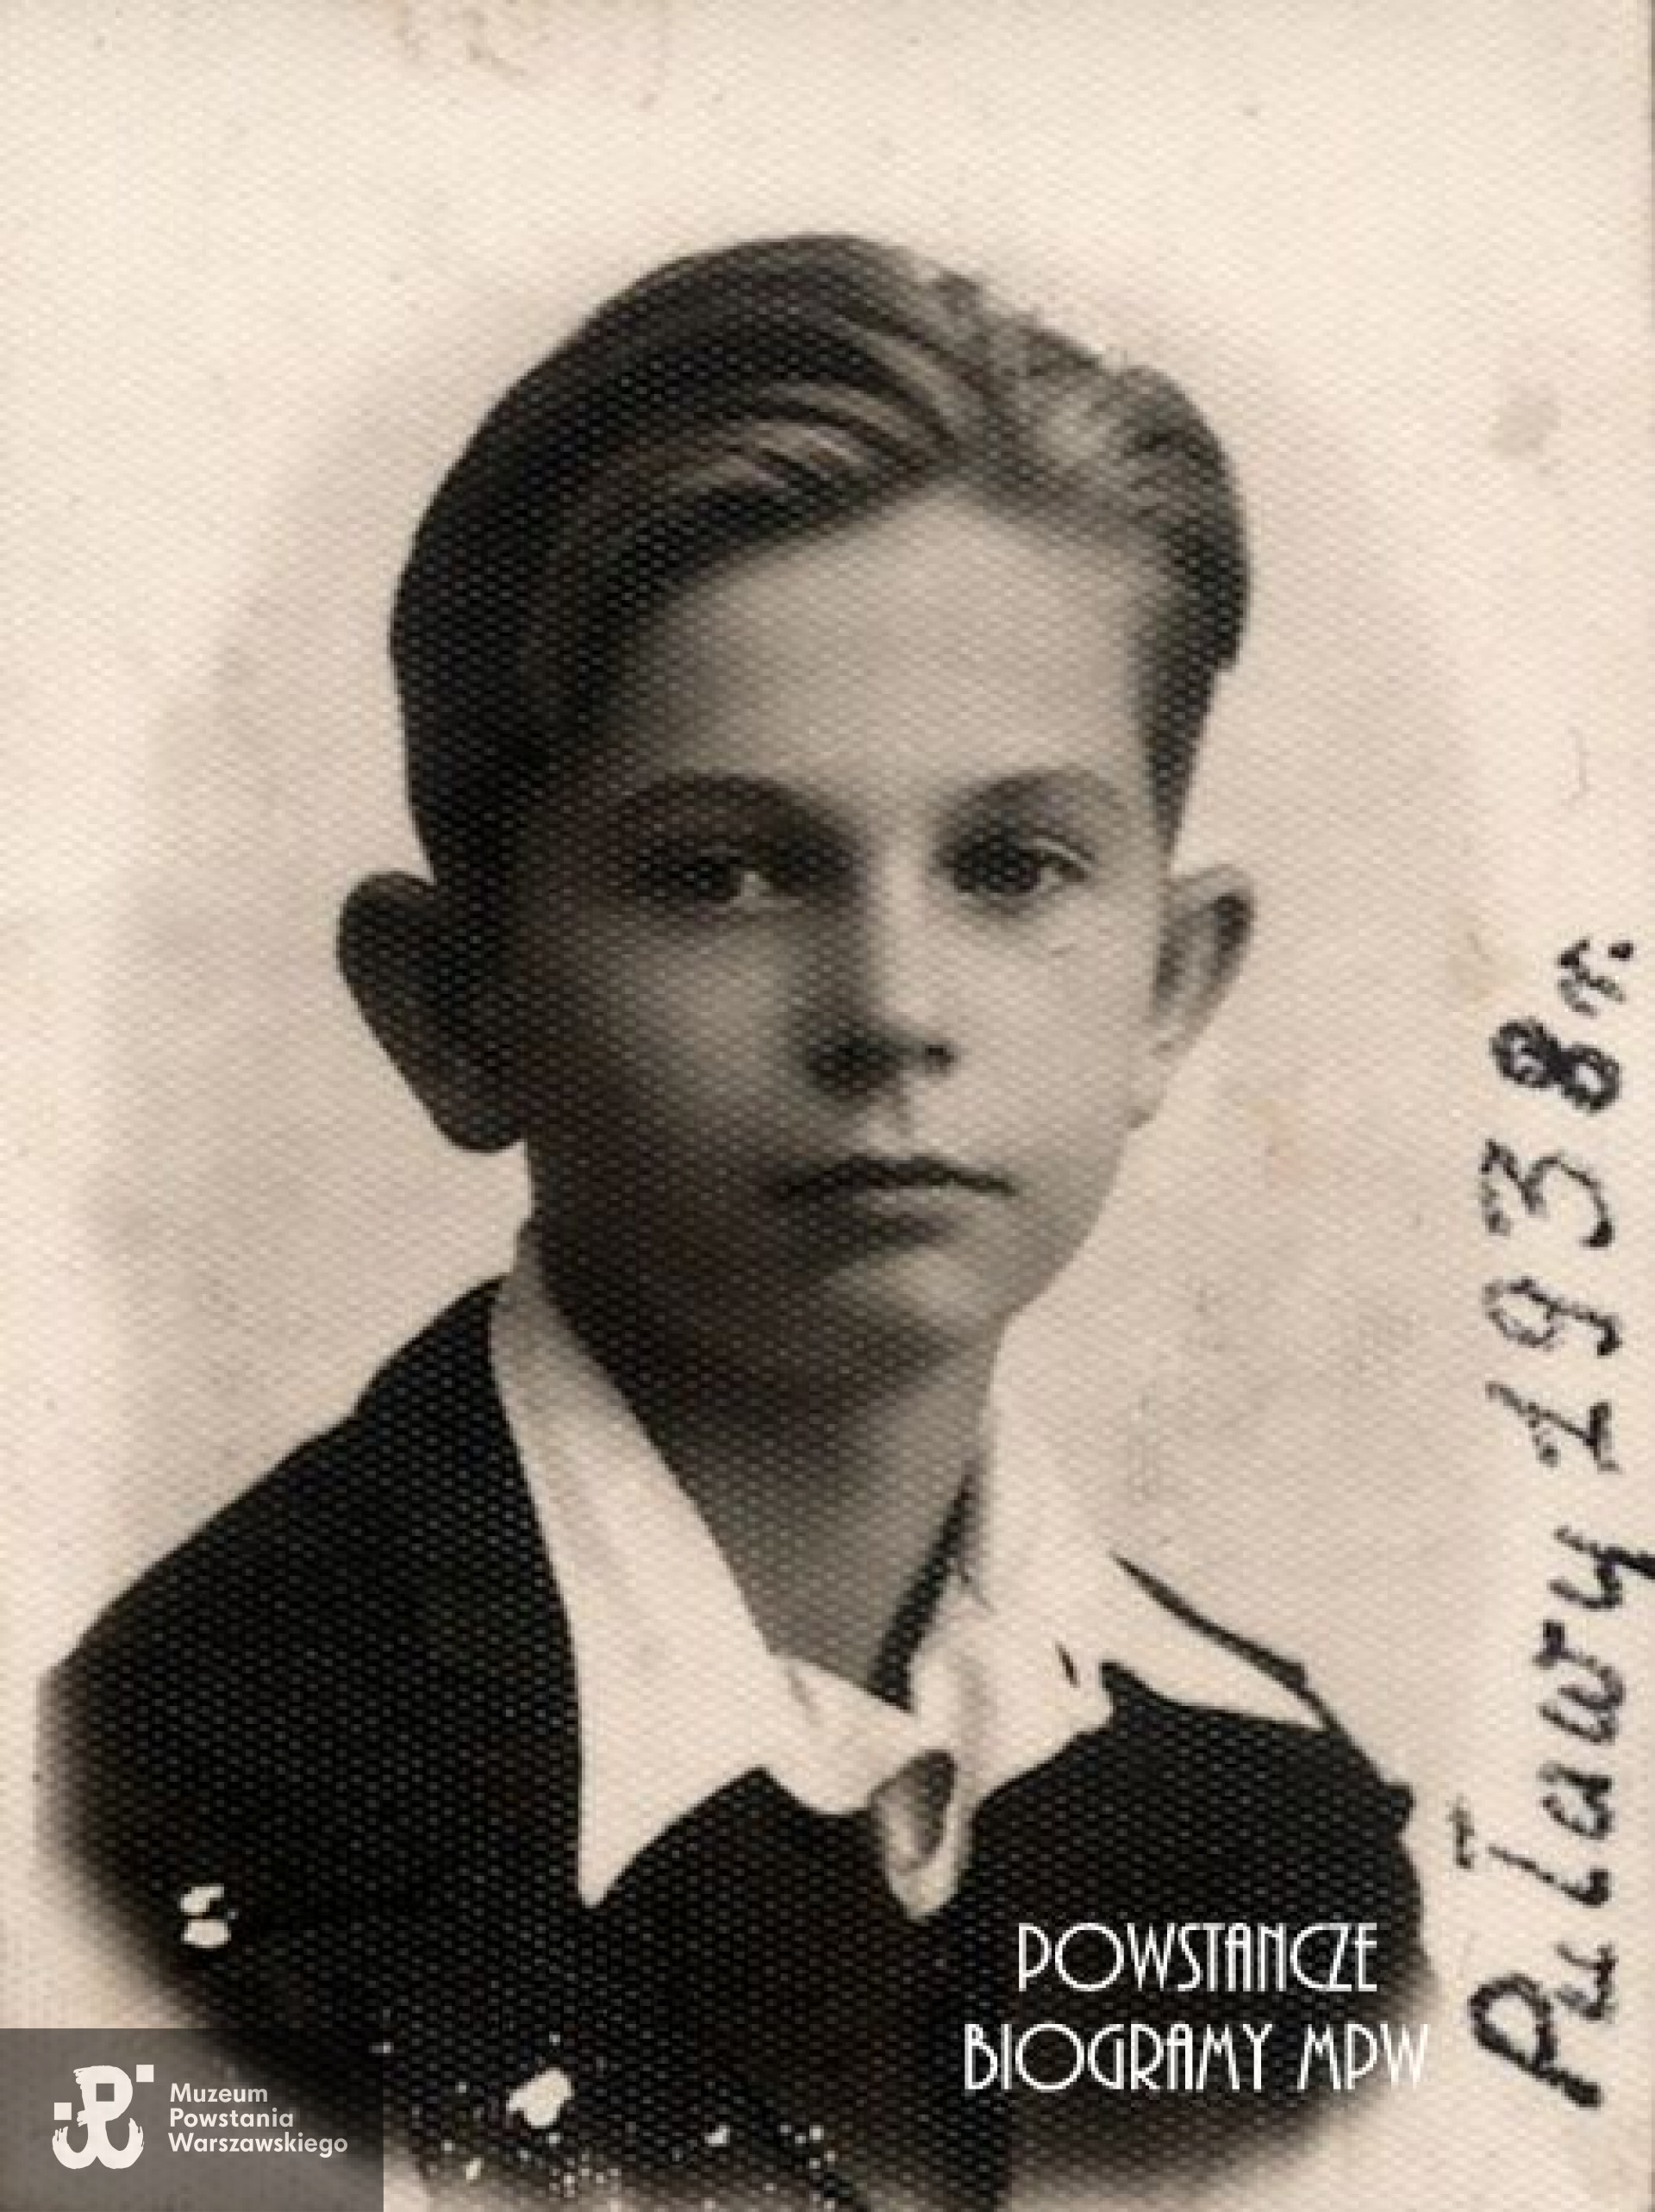 13-letni Władysław Gembal - 1938 rok. Fot. źródło: "Spadkobiercy żołnierzy Kompanii "Koszta", udostępnił Michał Kucharski.